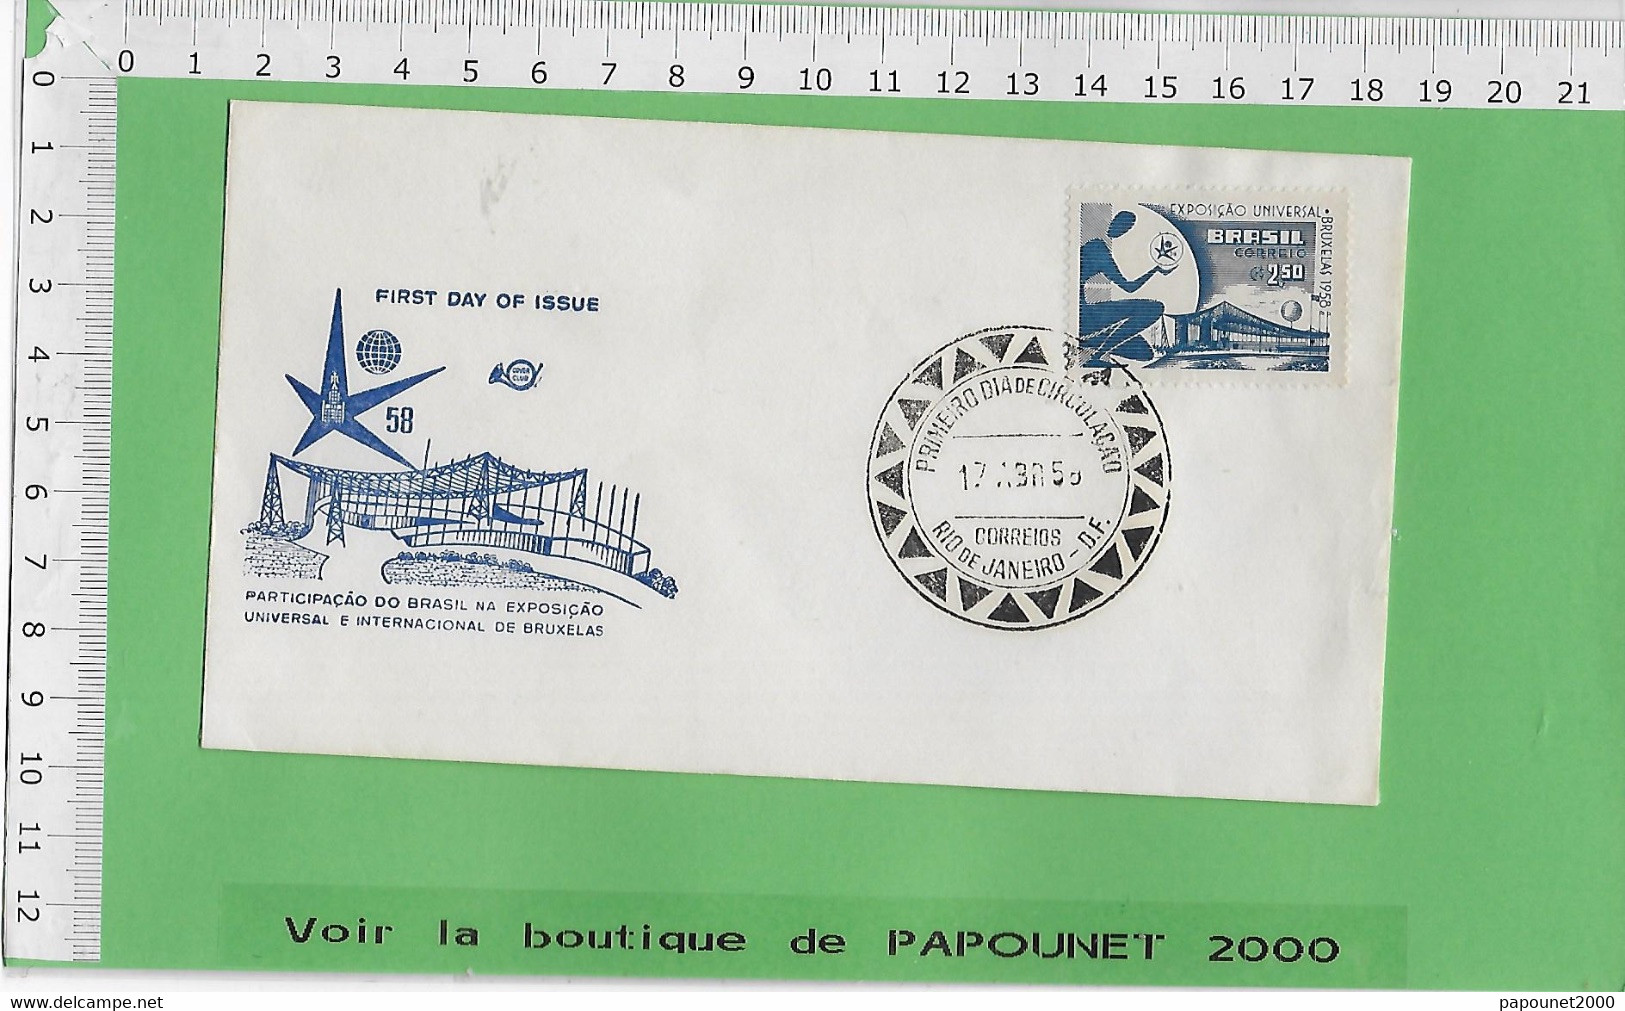 02581 - E BE04 1000-EXPO 58 : Timbre*Enveloppe /  PAVILLON DU BRESIL - 1958 – Bruxelles (Belgio)